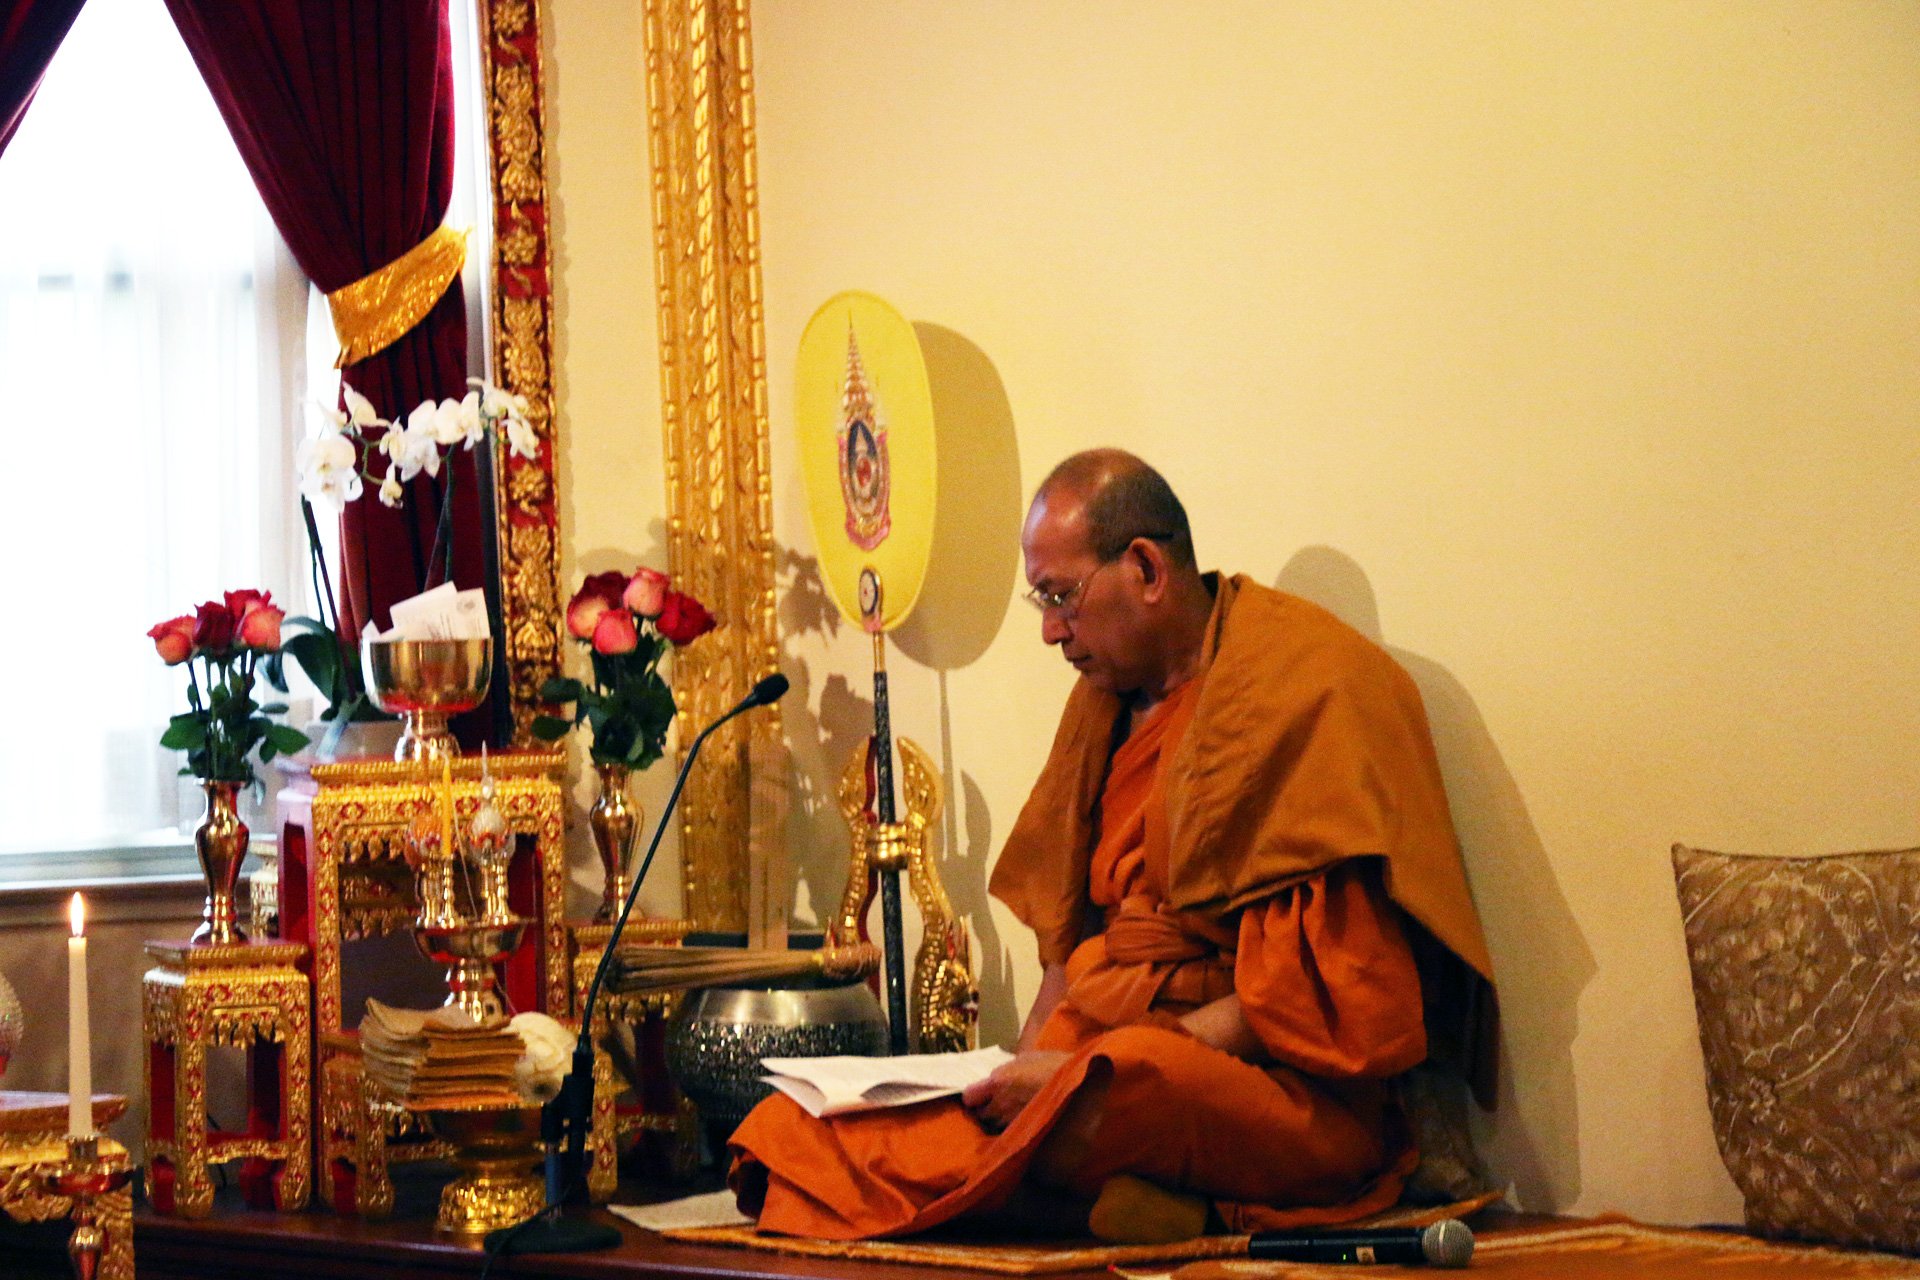 A monk preparing to welcome congregants to the Songkran festival.